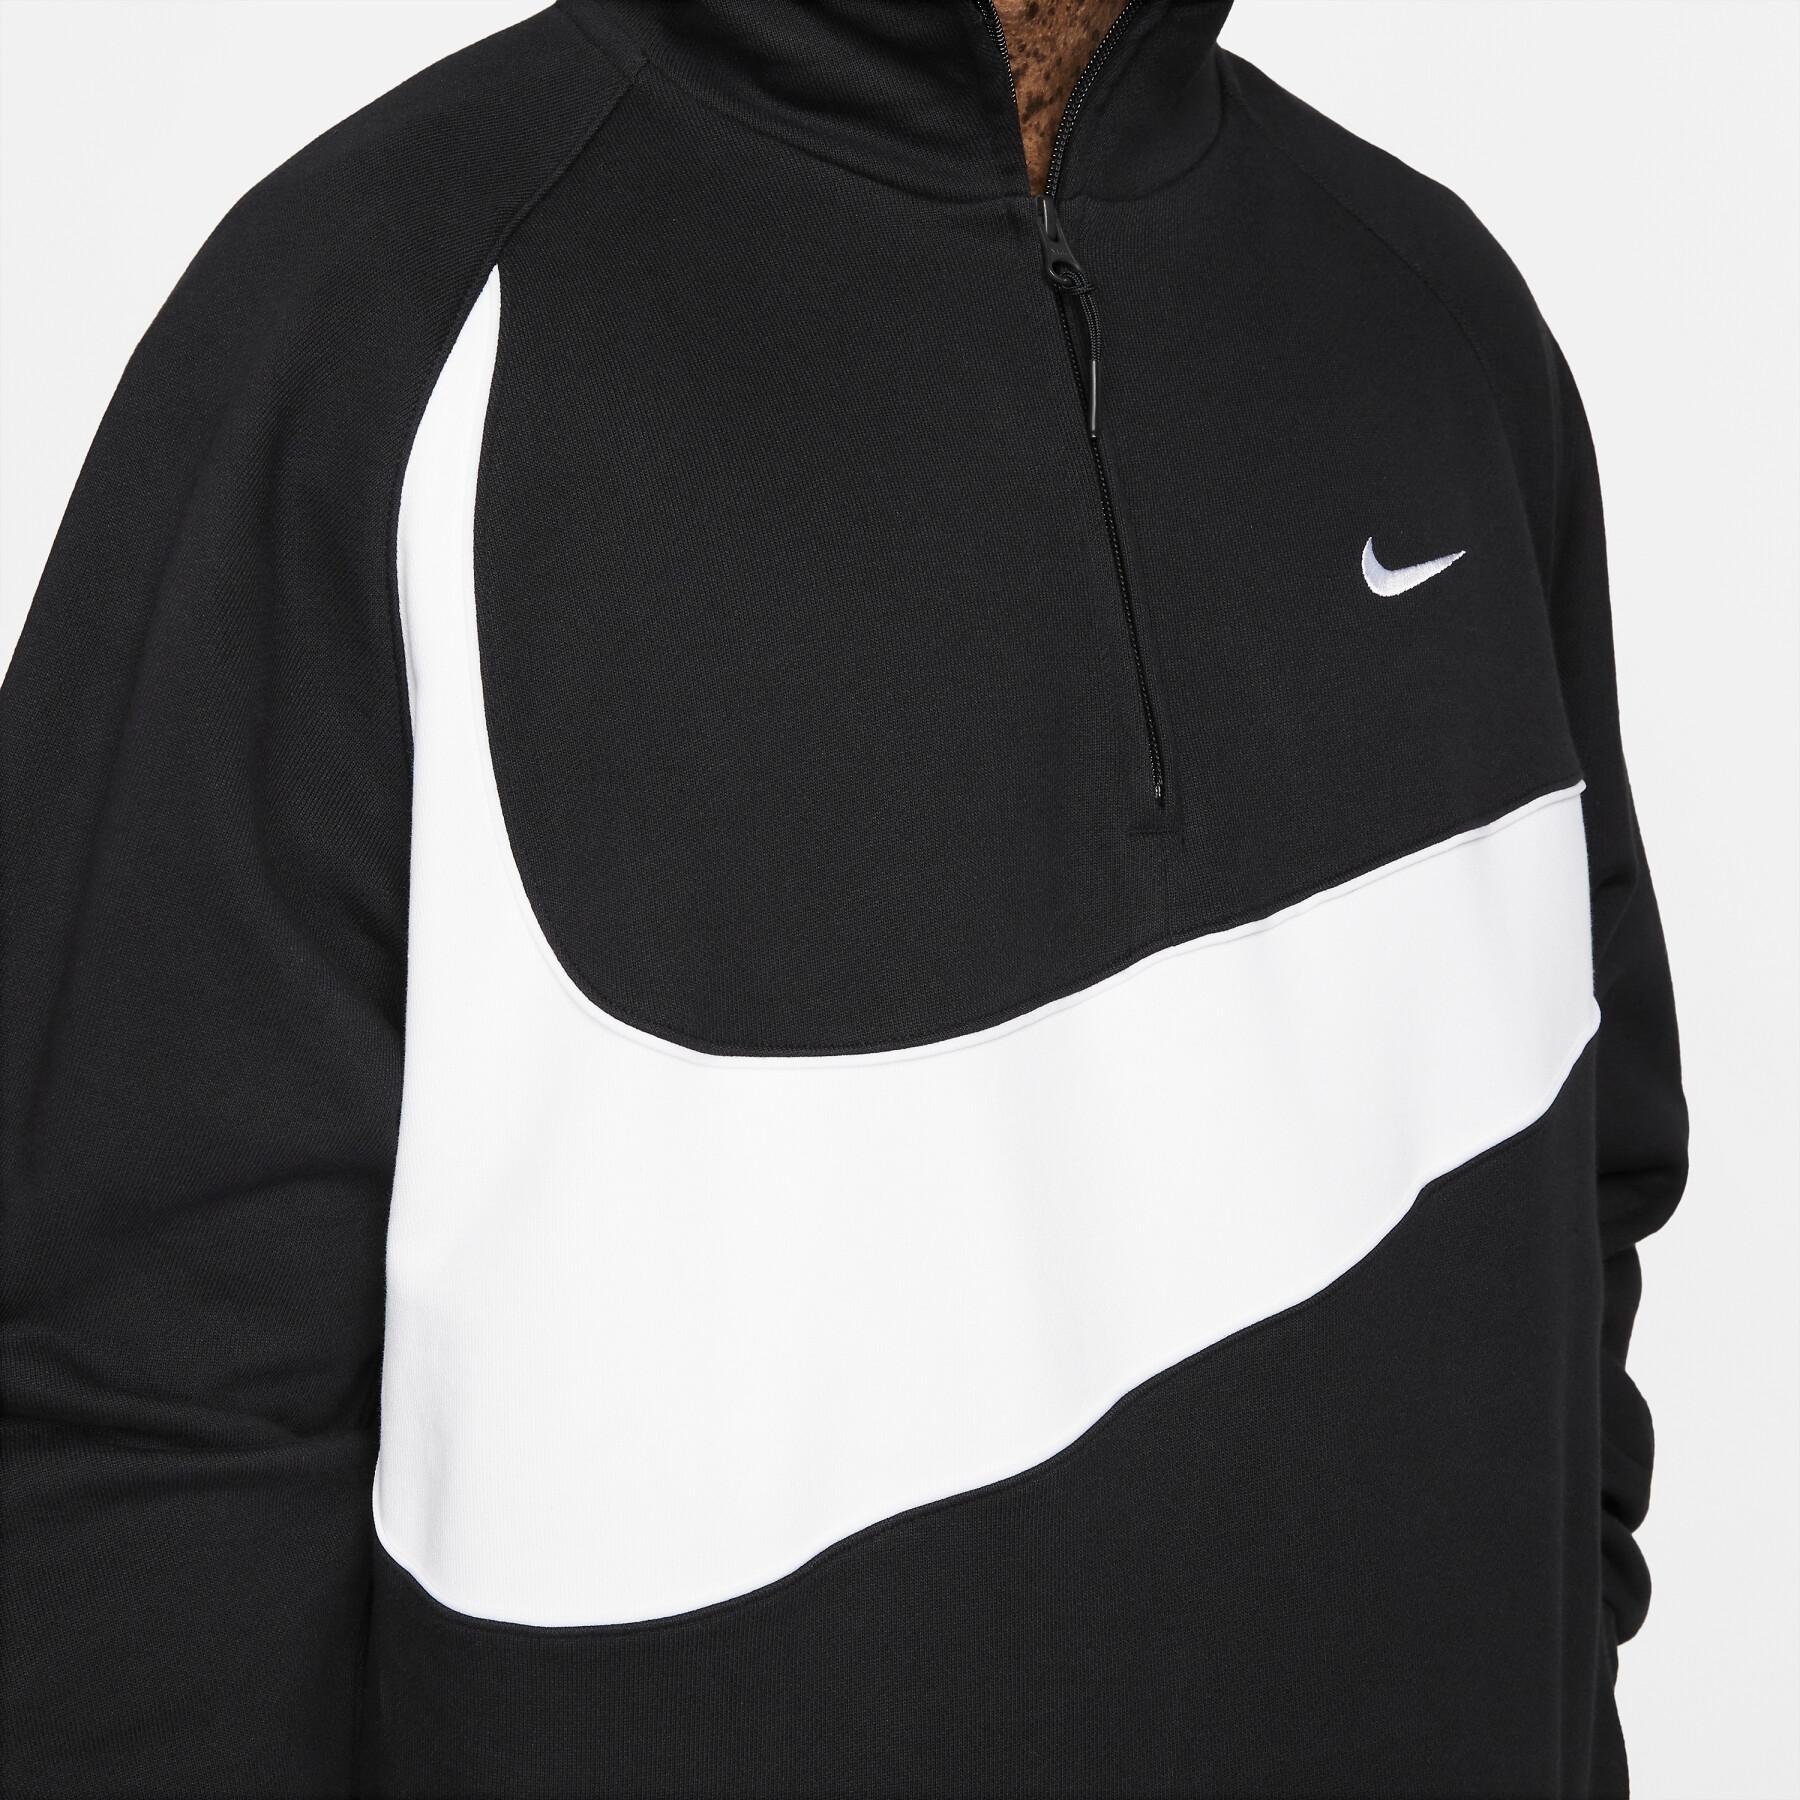 Sweatshirt kaptur 1/2 zip Nike Swoosh Fleece